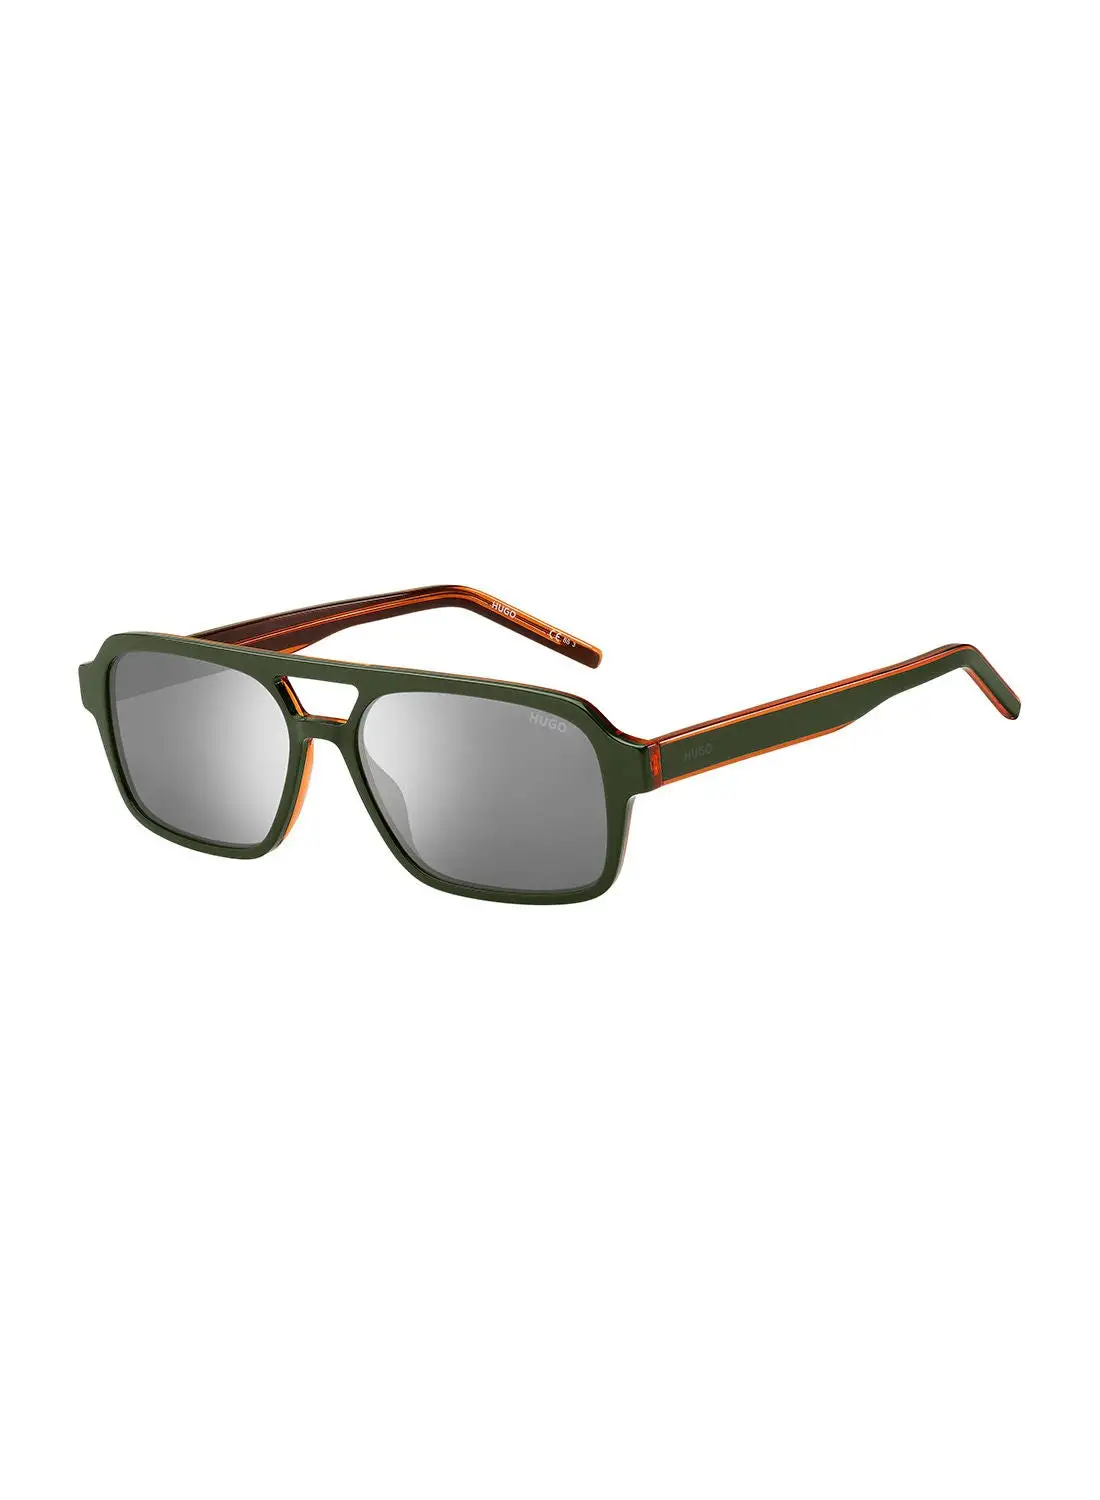 HUGO Men's UV Protection Rectangular Sunglasses - Hg 1241/S Milit Grn 56 - Lens Size: 56 Mm